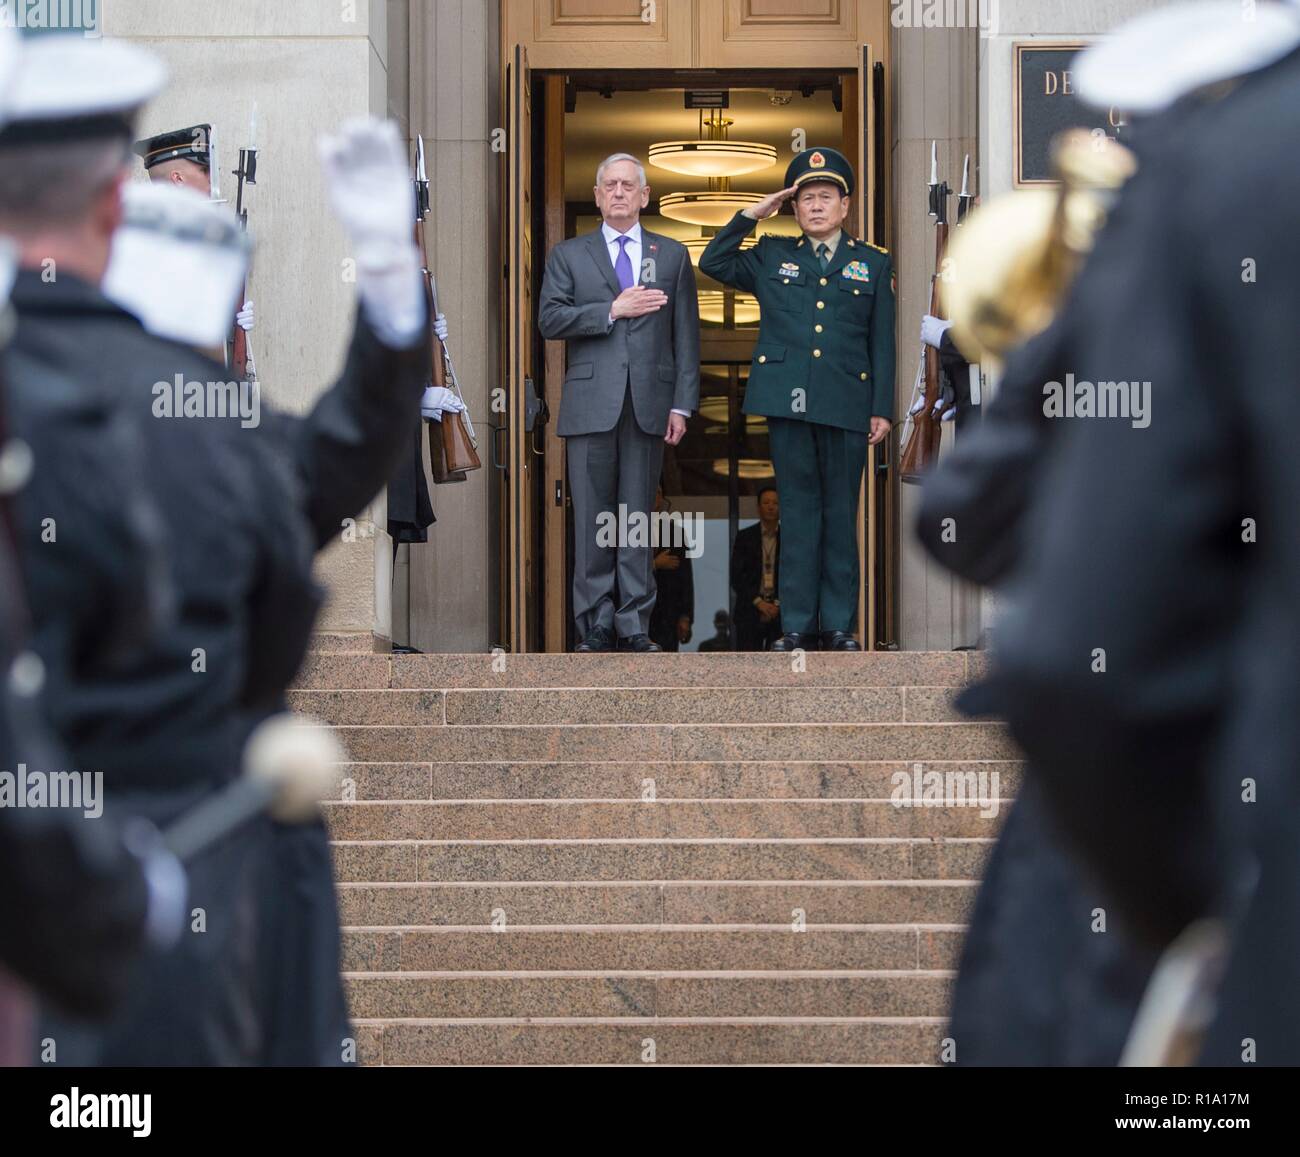 Us-Verteidigungsminister James Mattis, Links, und der Minister für Nationale Verteidigung der Volksrepublik China General Wei Fenghe render Ehren während der Begrüßungszeremonie im Pentagon November 9, 2018 in Arlington, Virginia. Stockfoto